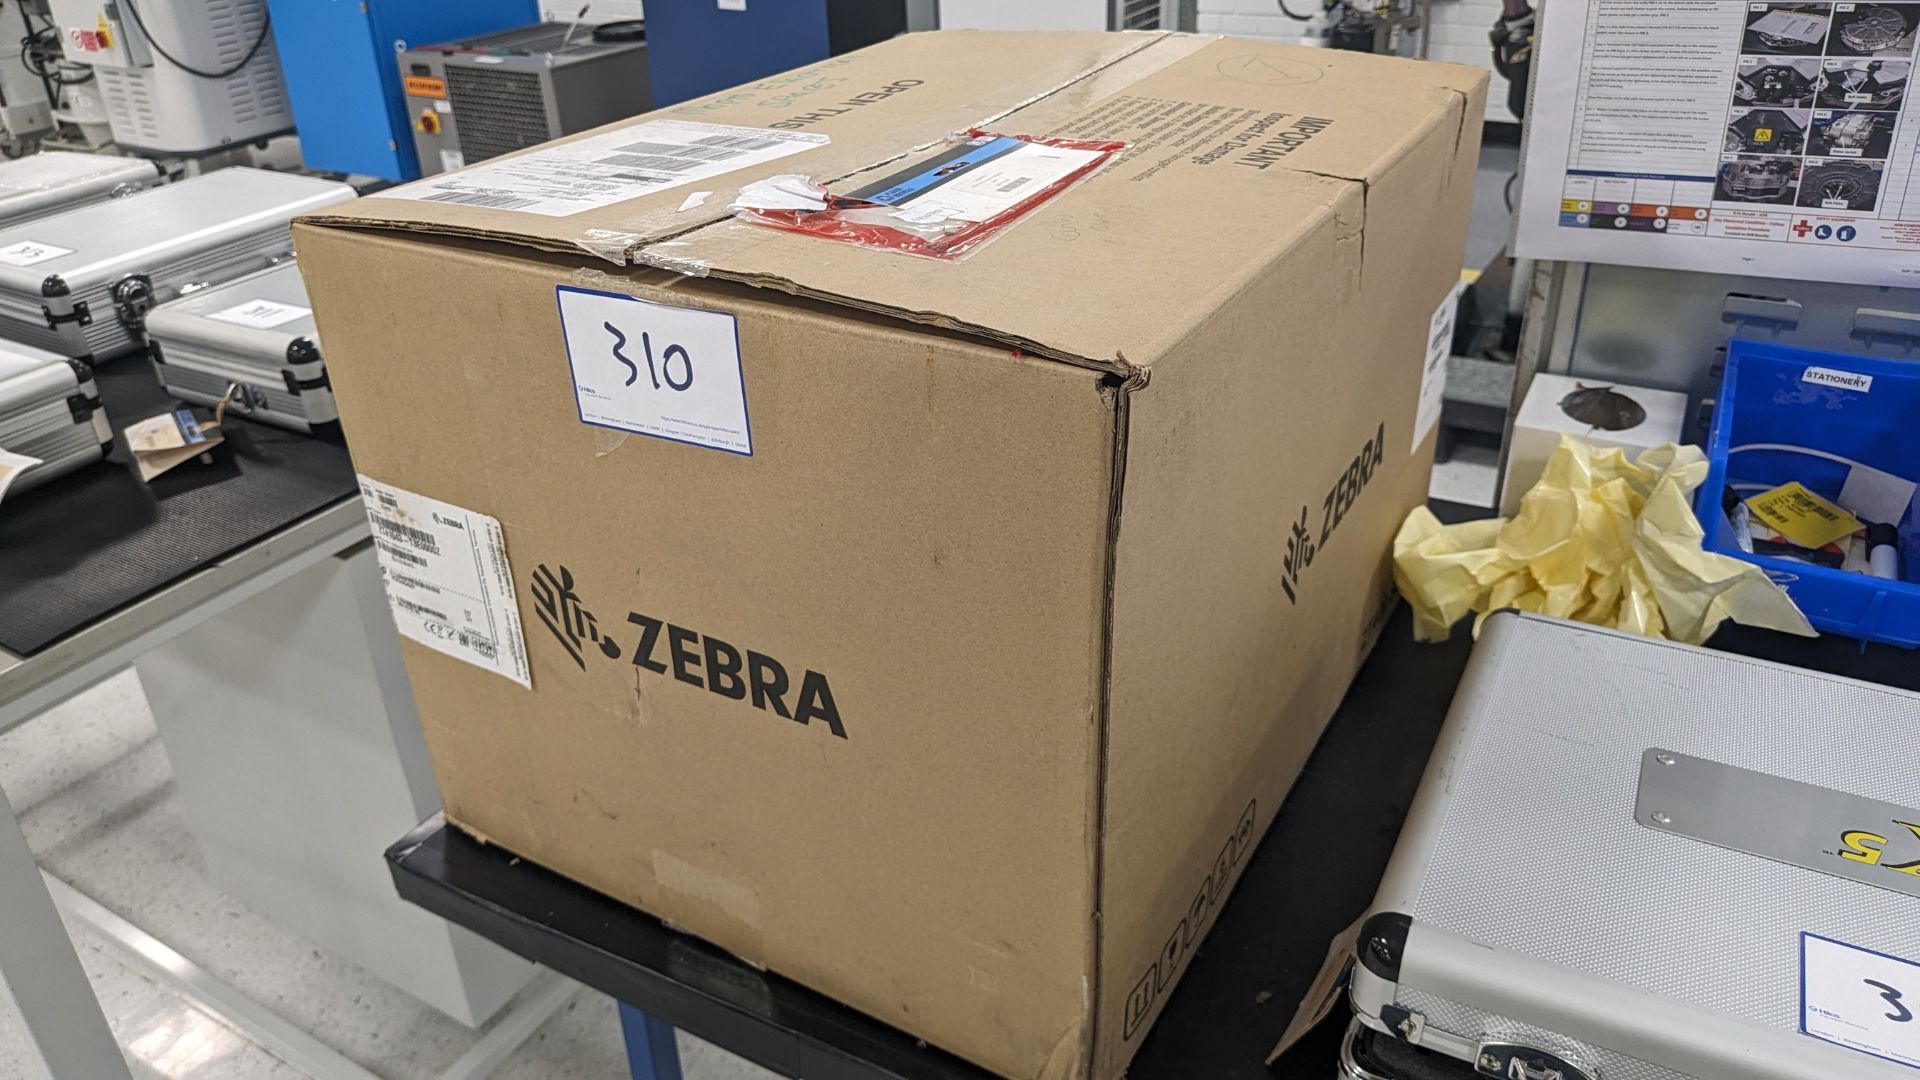 Zebra ZT400 Standard label printer in box Serial number 18J172701475